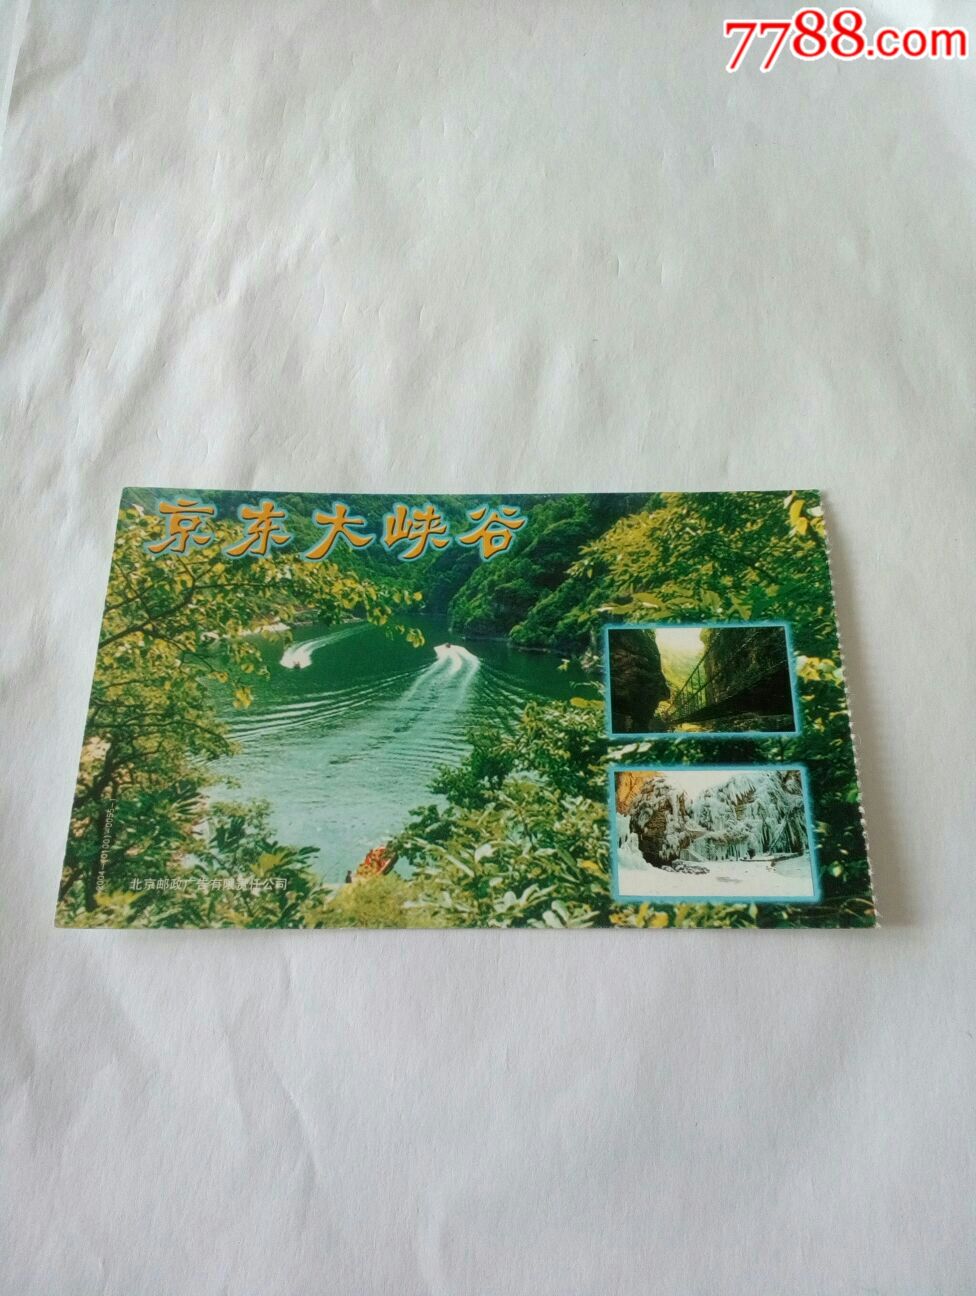 京东大峡谷景区门票图片